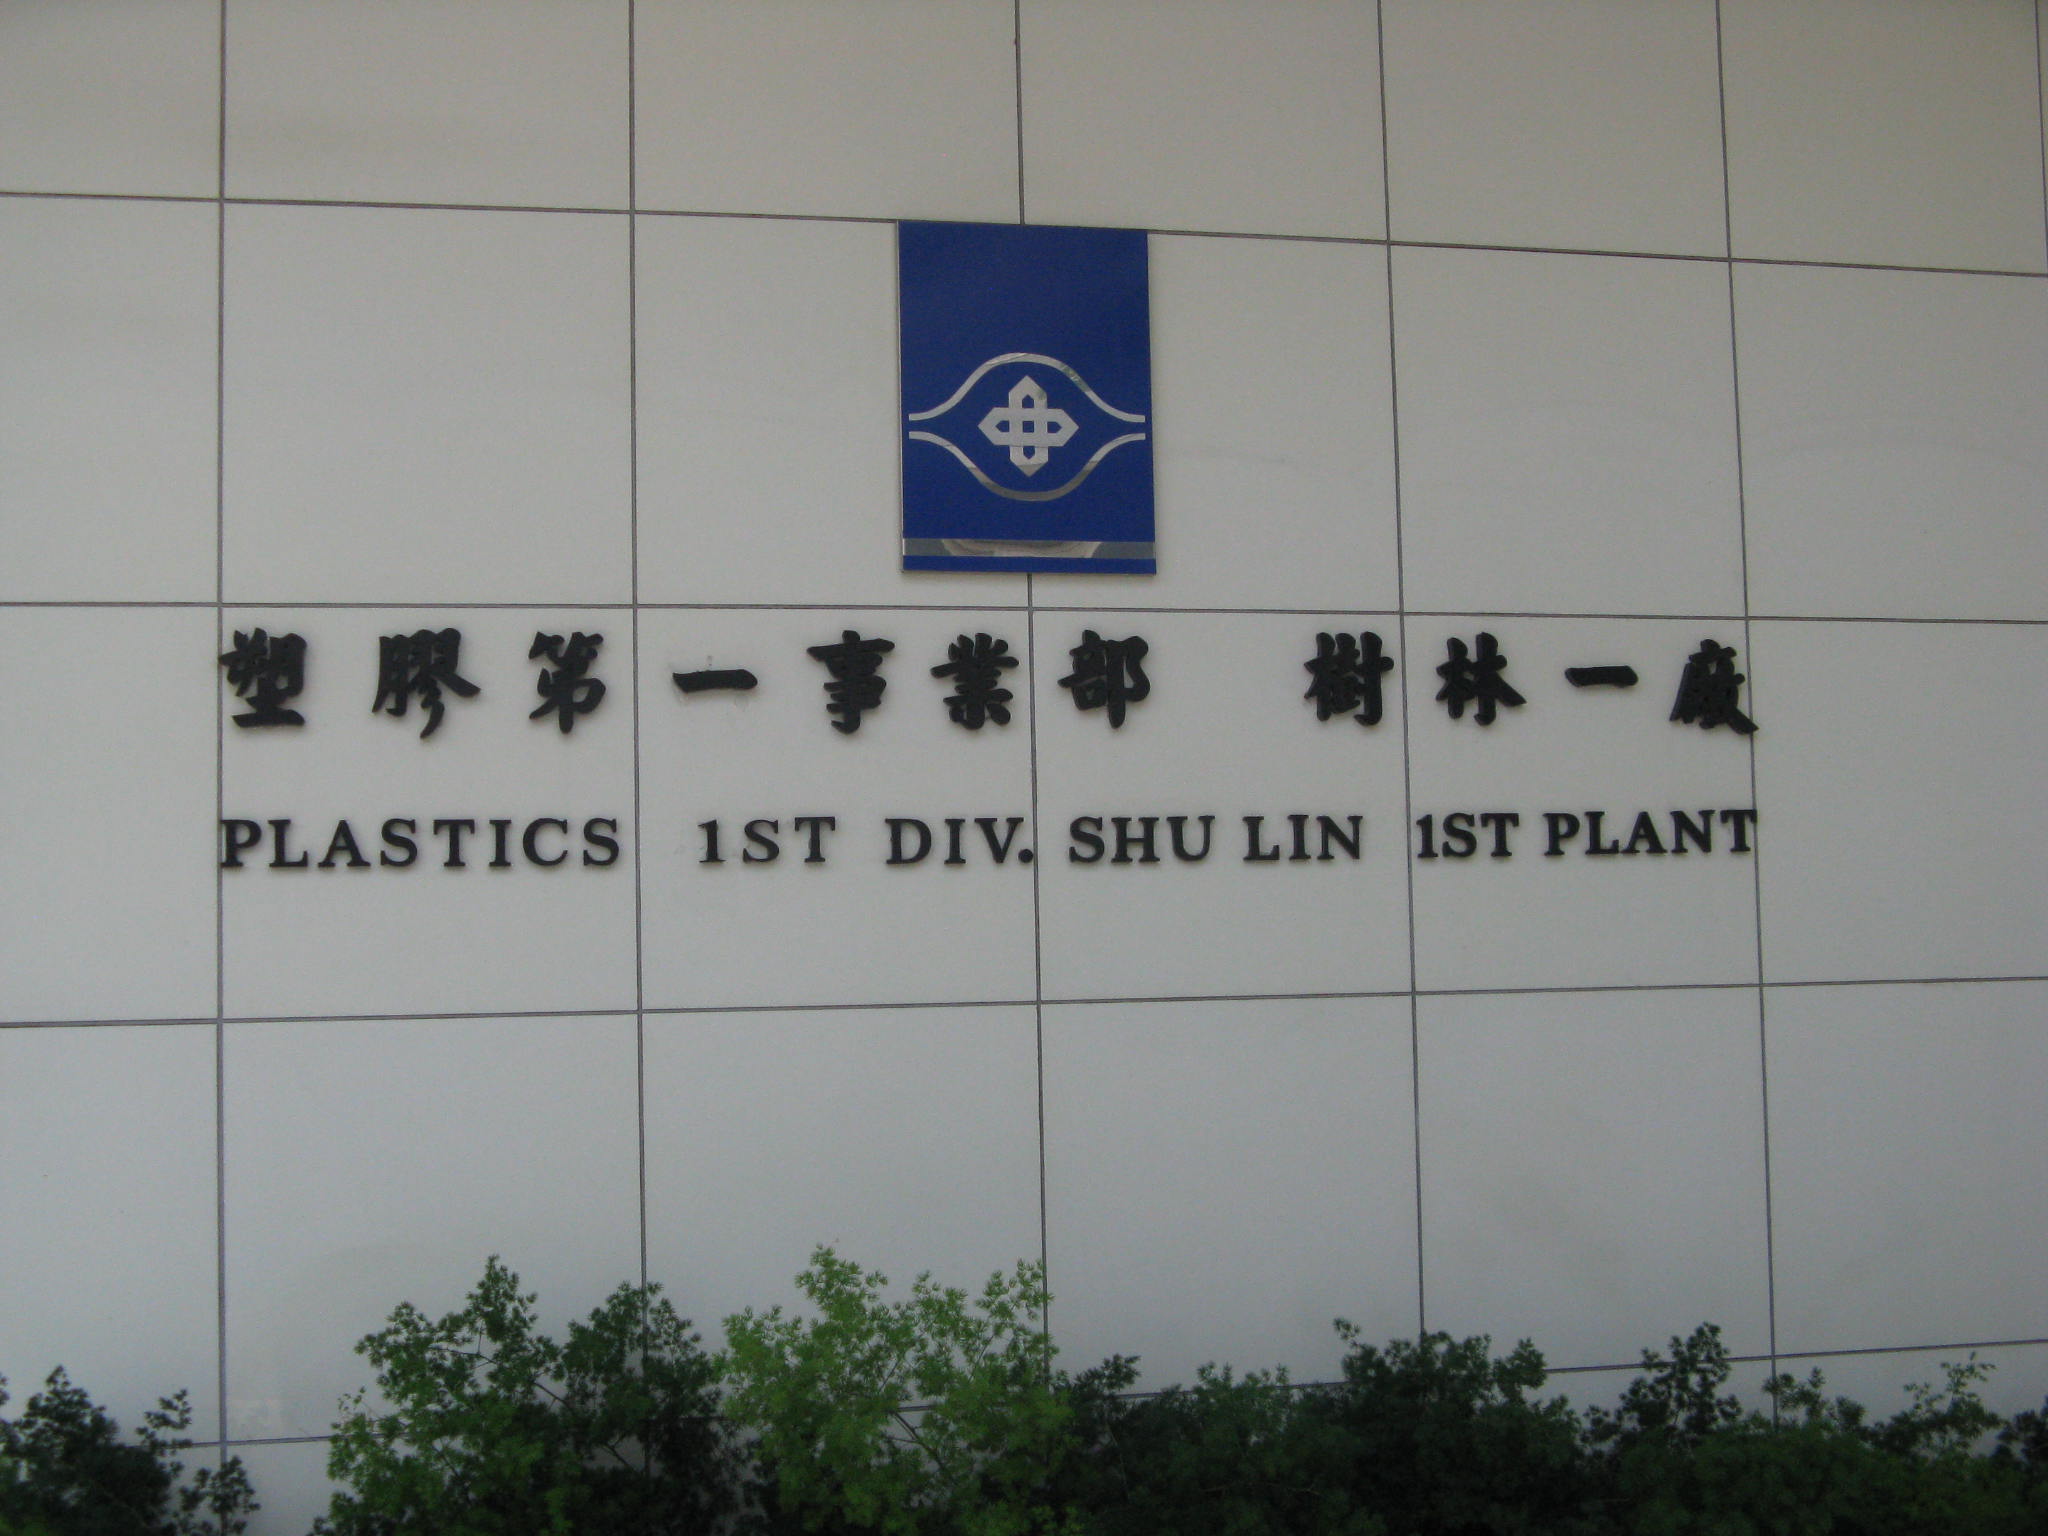 南亞塑膠工業股份有限公司塑膠第一事業部樹林一廠